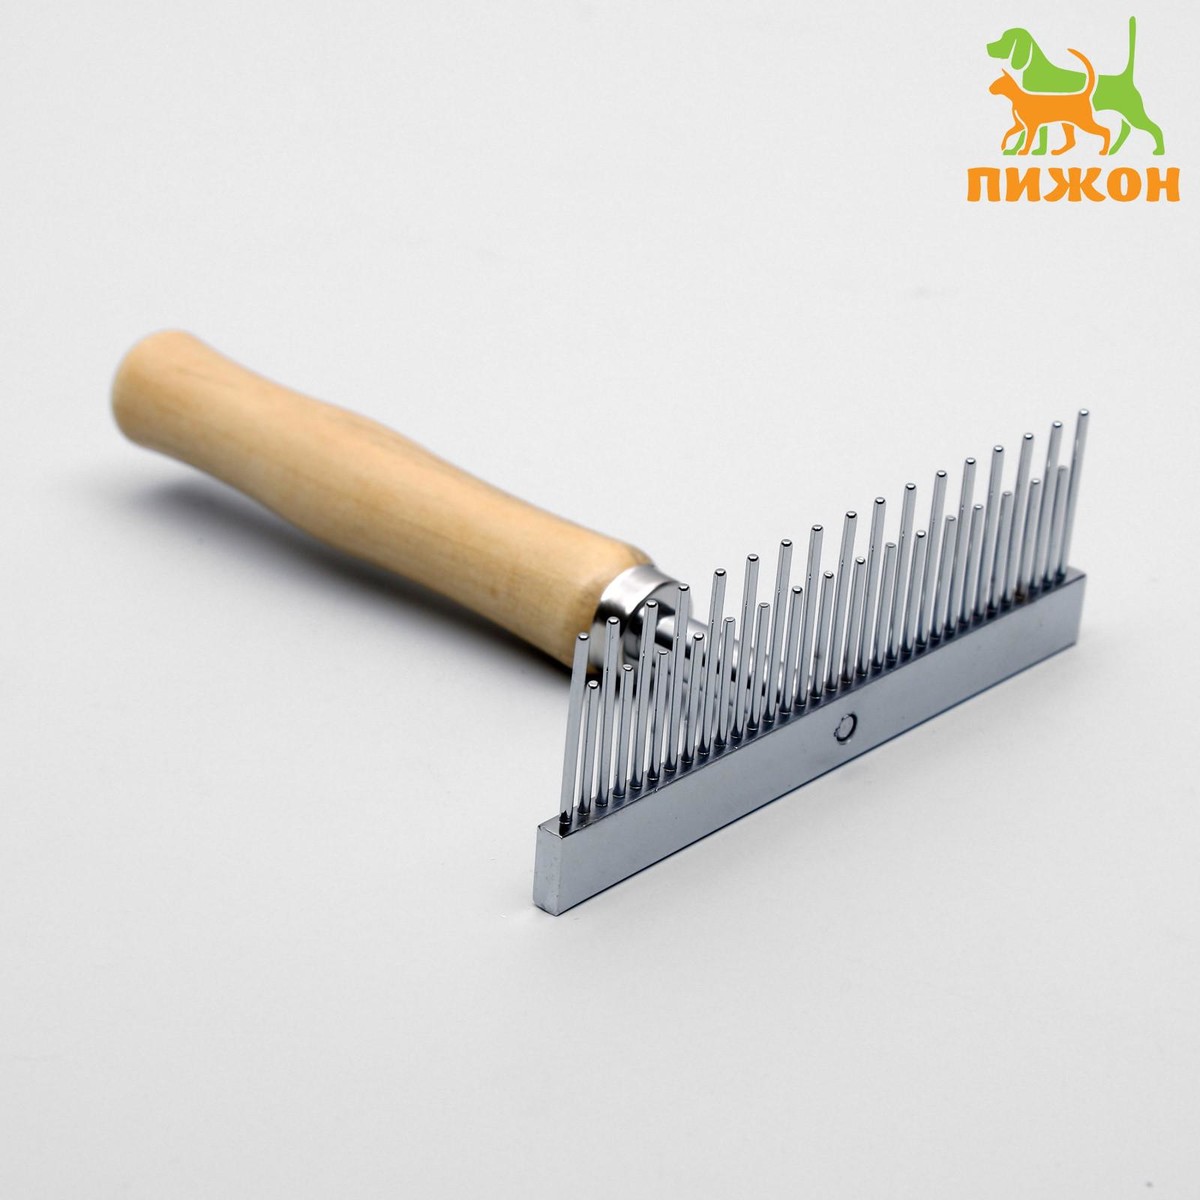 Расчёска-грабли wood с зубьями разной длины, деревянная ручка, 12,5 х 9,5 см, Пижон